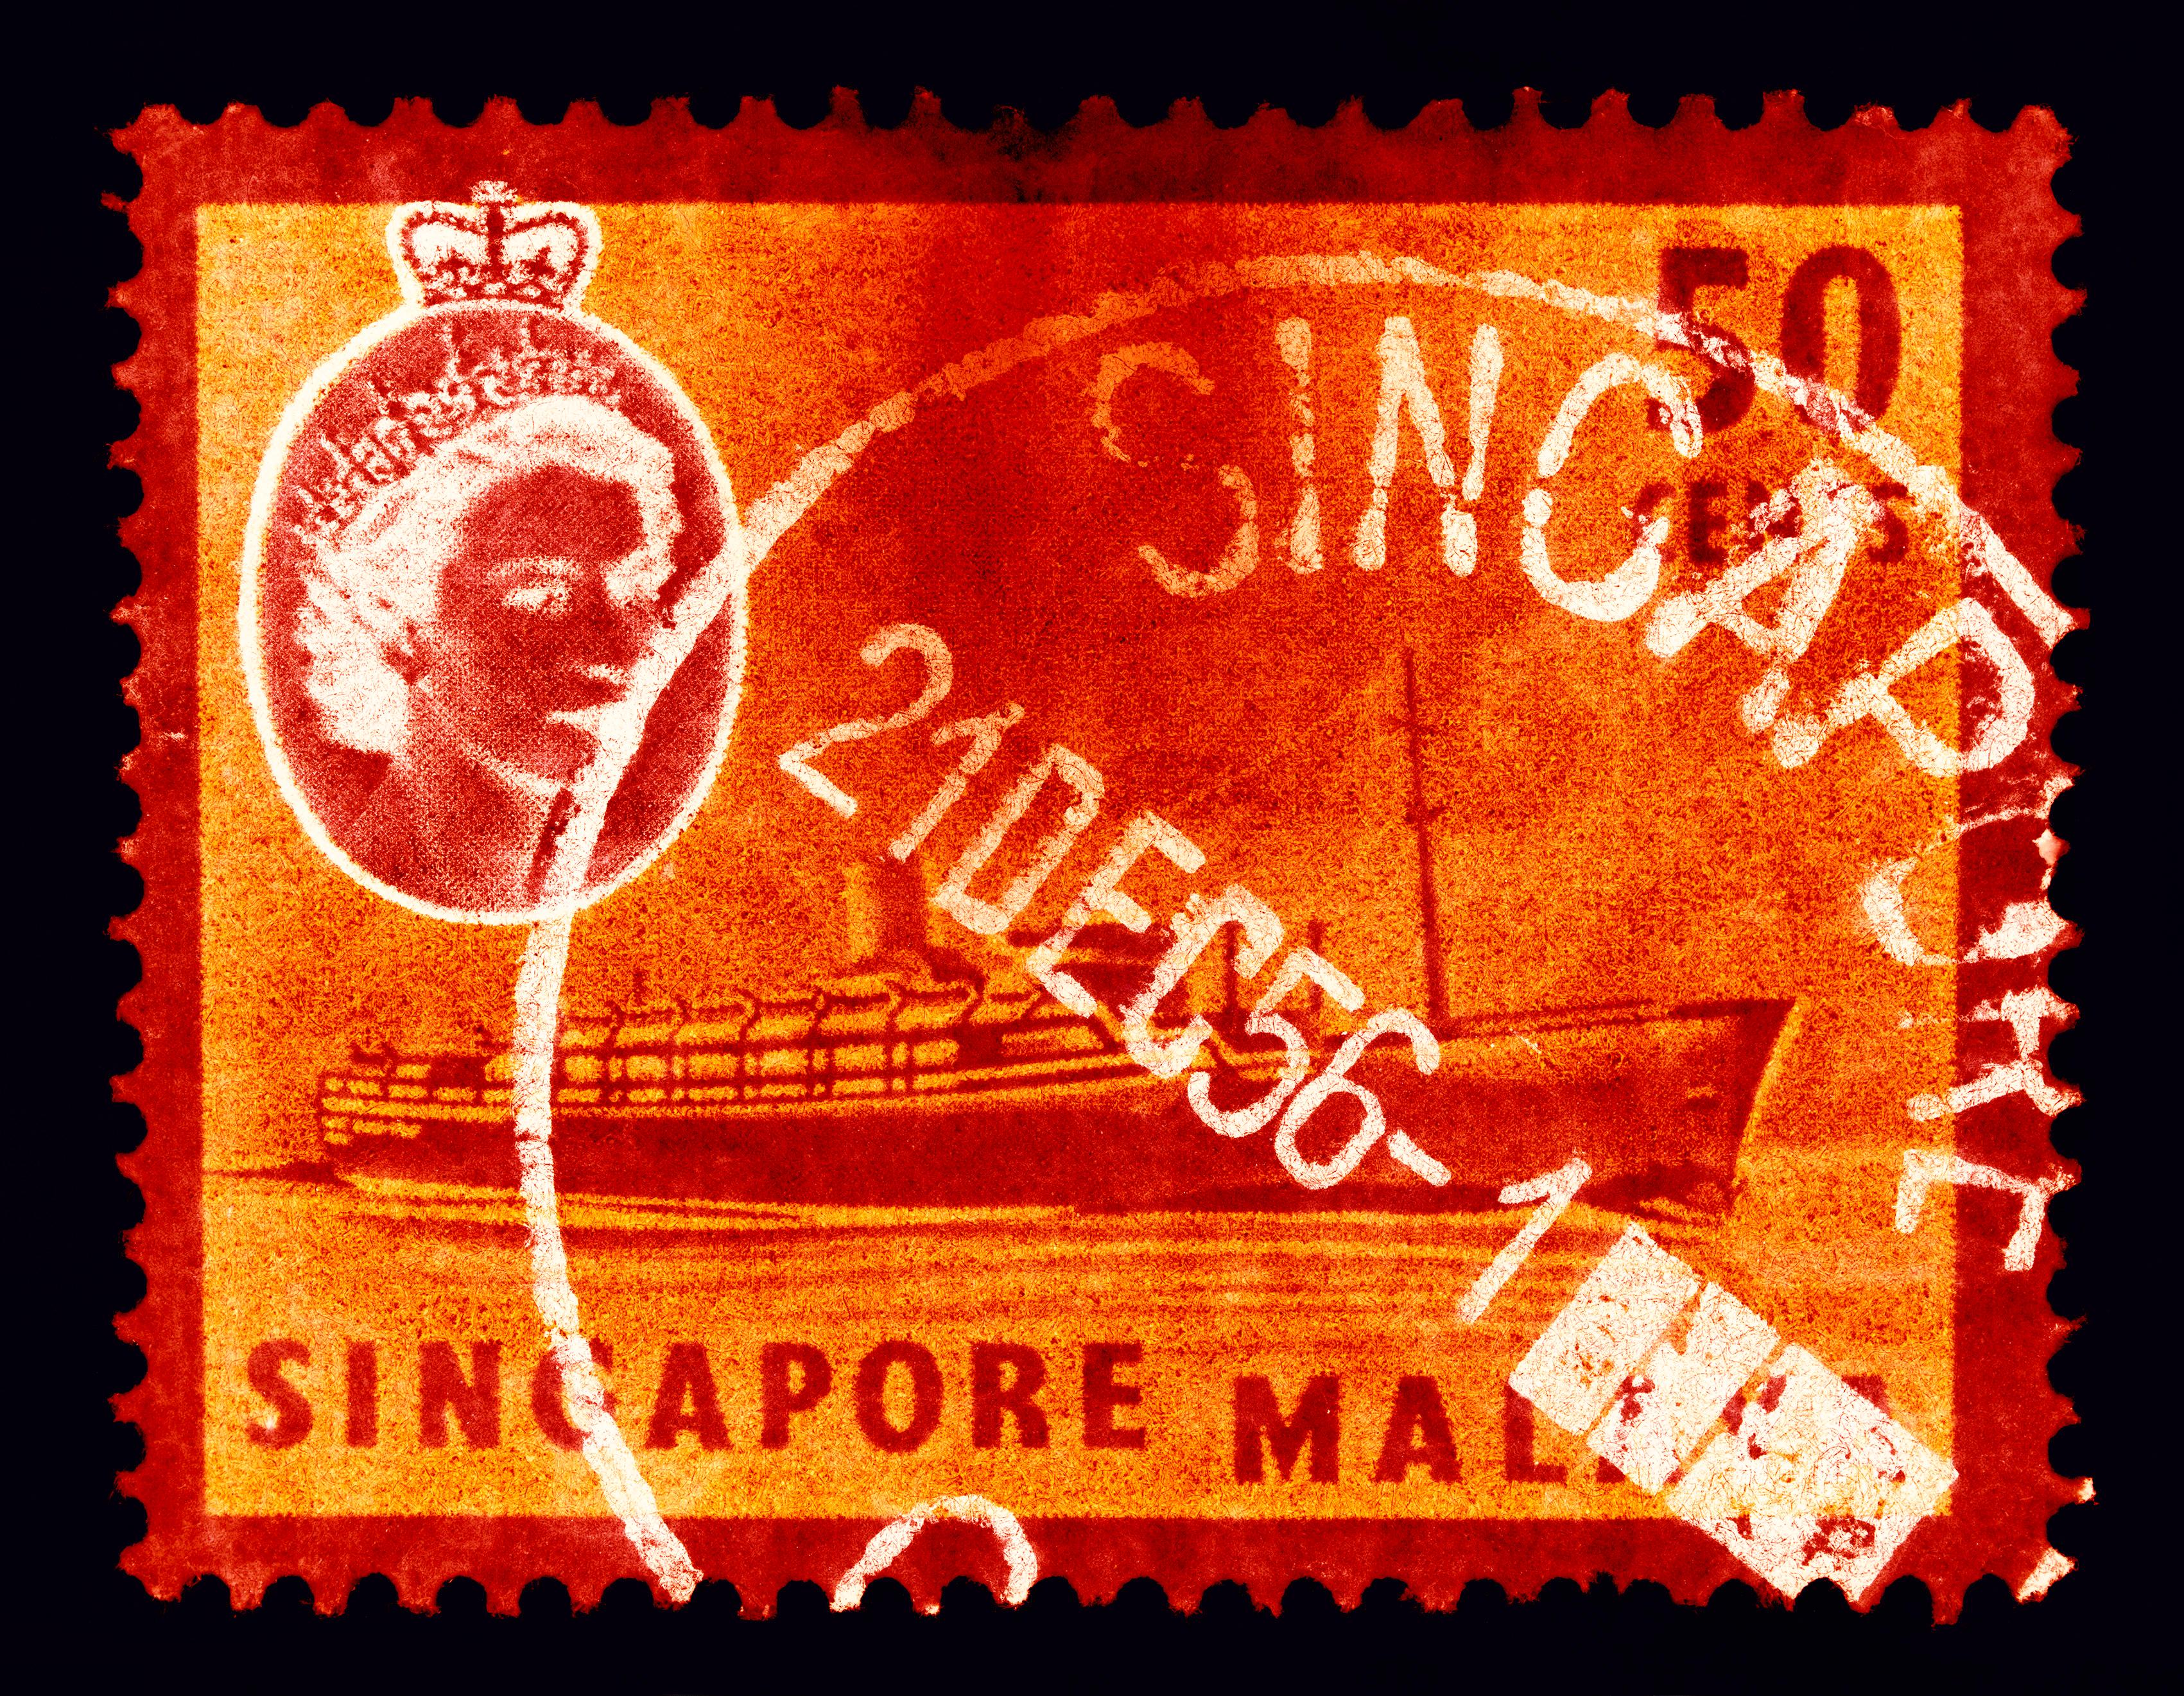 Print Heidler & Heeps - Collection de timbres de Singapour, 50c QEII bateau à vapeur orange - Photo couleur Pop Art